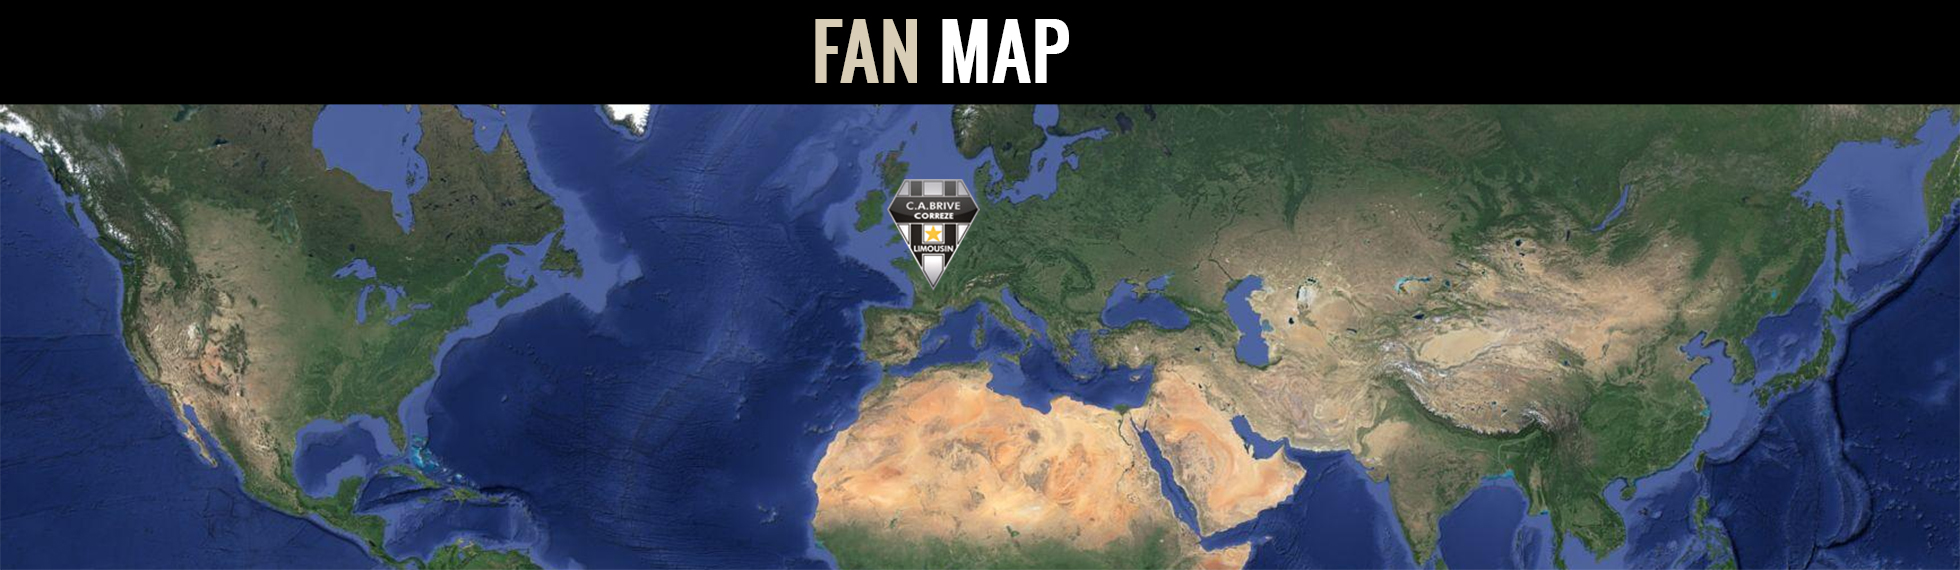 fan_map4.jpg